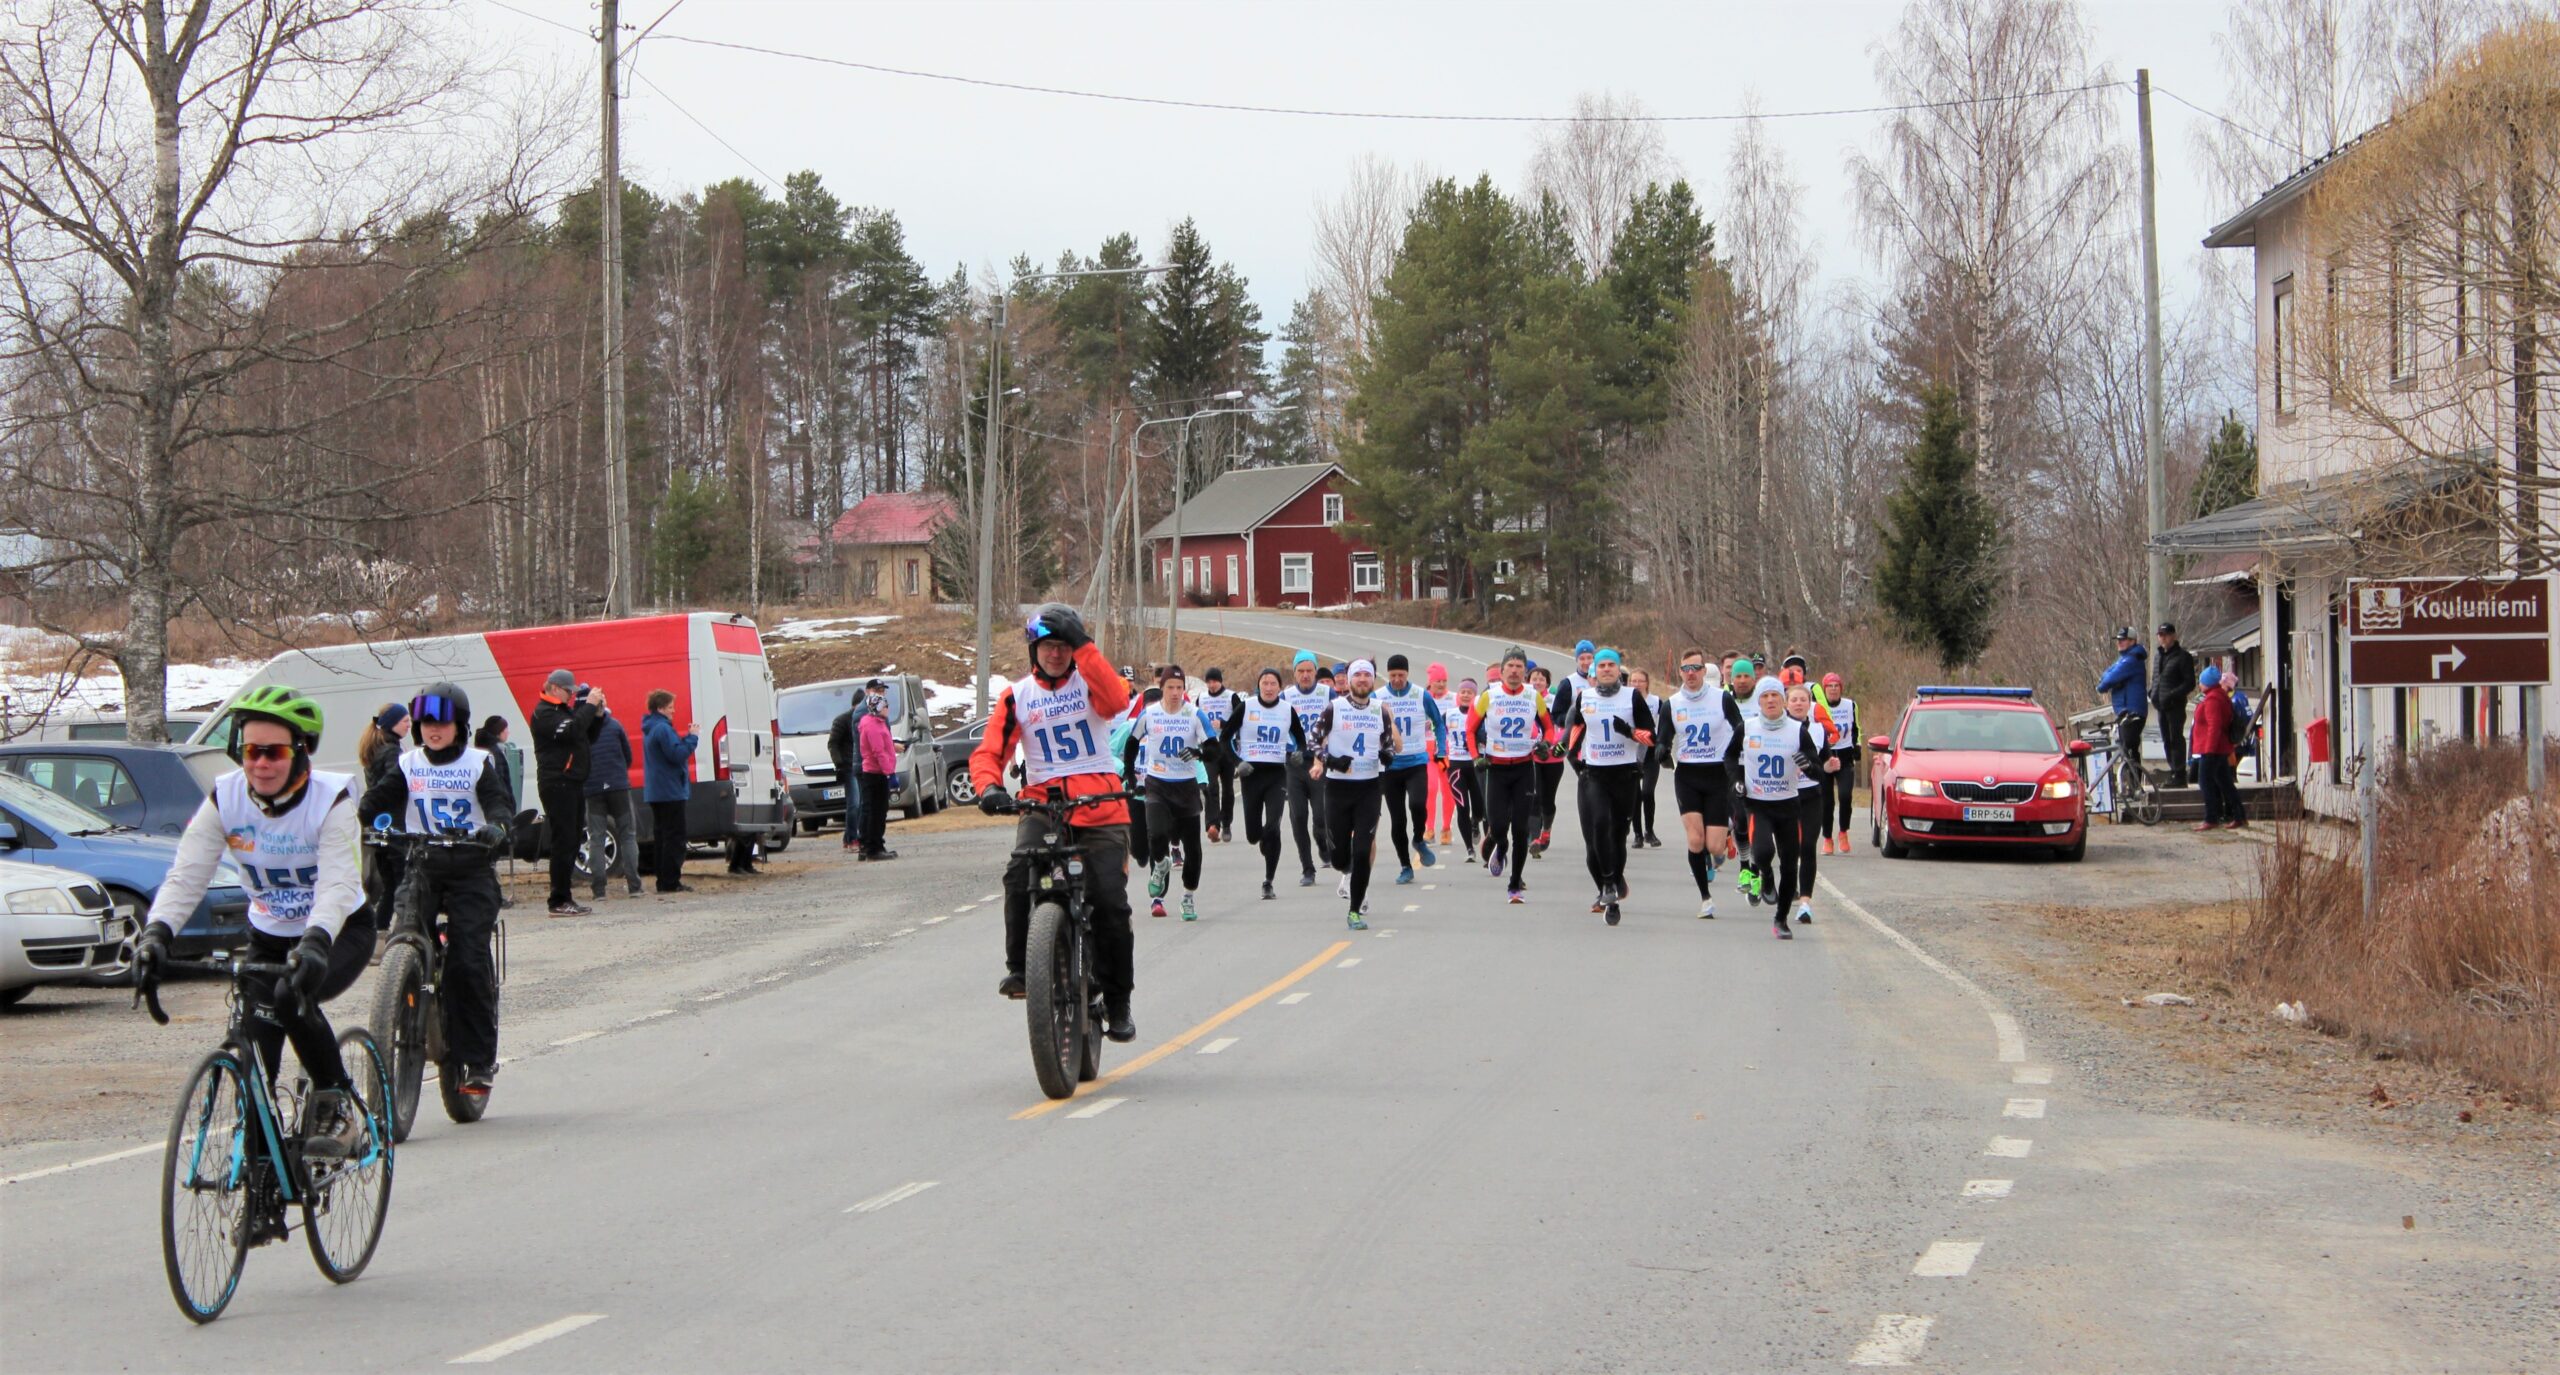 Juoksijat ja pyöräilijät lähtivät matkaan Sääksjärven Nuorisoseuran edestä. Sääksjärven ympärijuoksu käynnistää juoksukisojen kesän Järviseudulla.